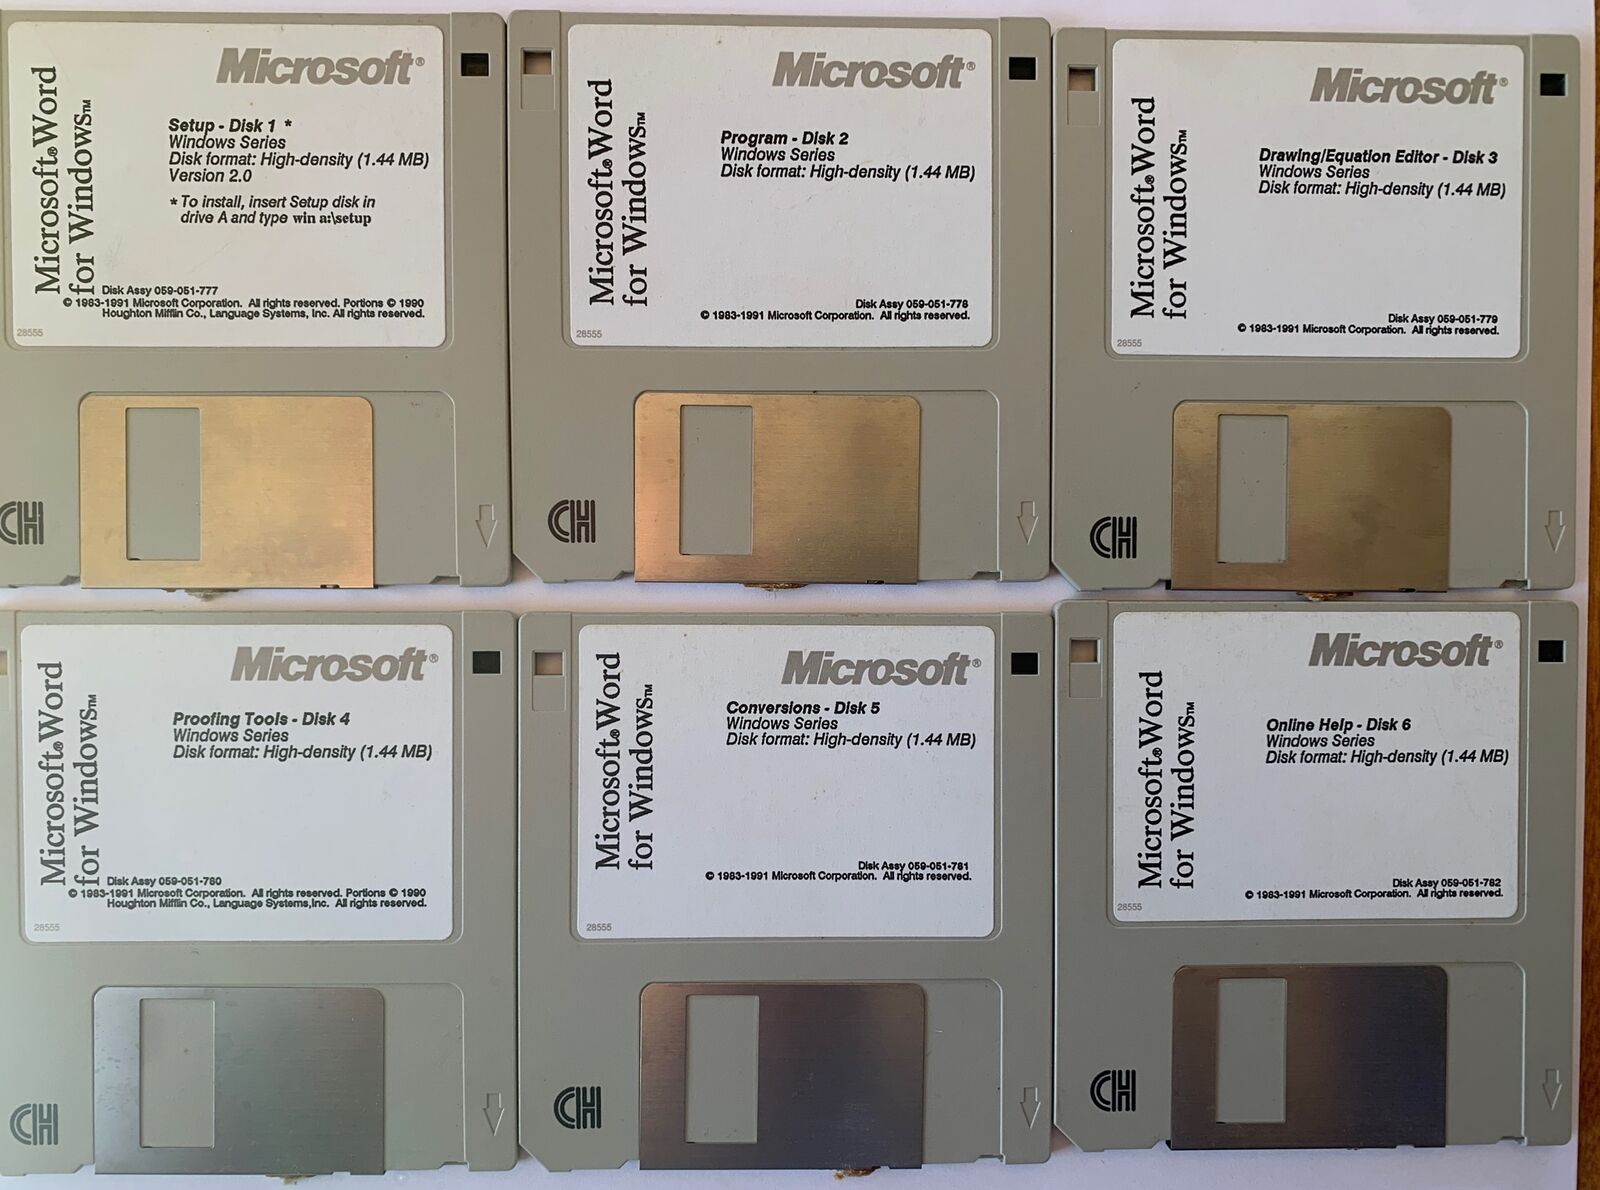 Microsoft Word For Windows V 2.0 On 6 3.5” Floppy Disks